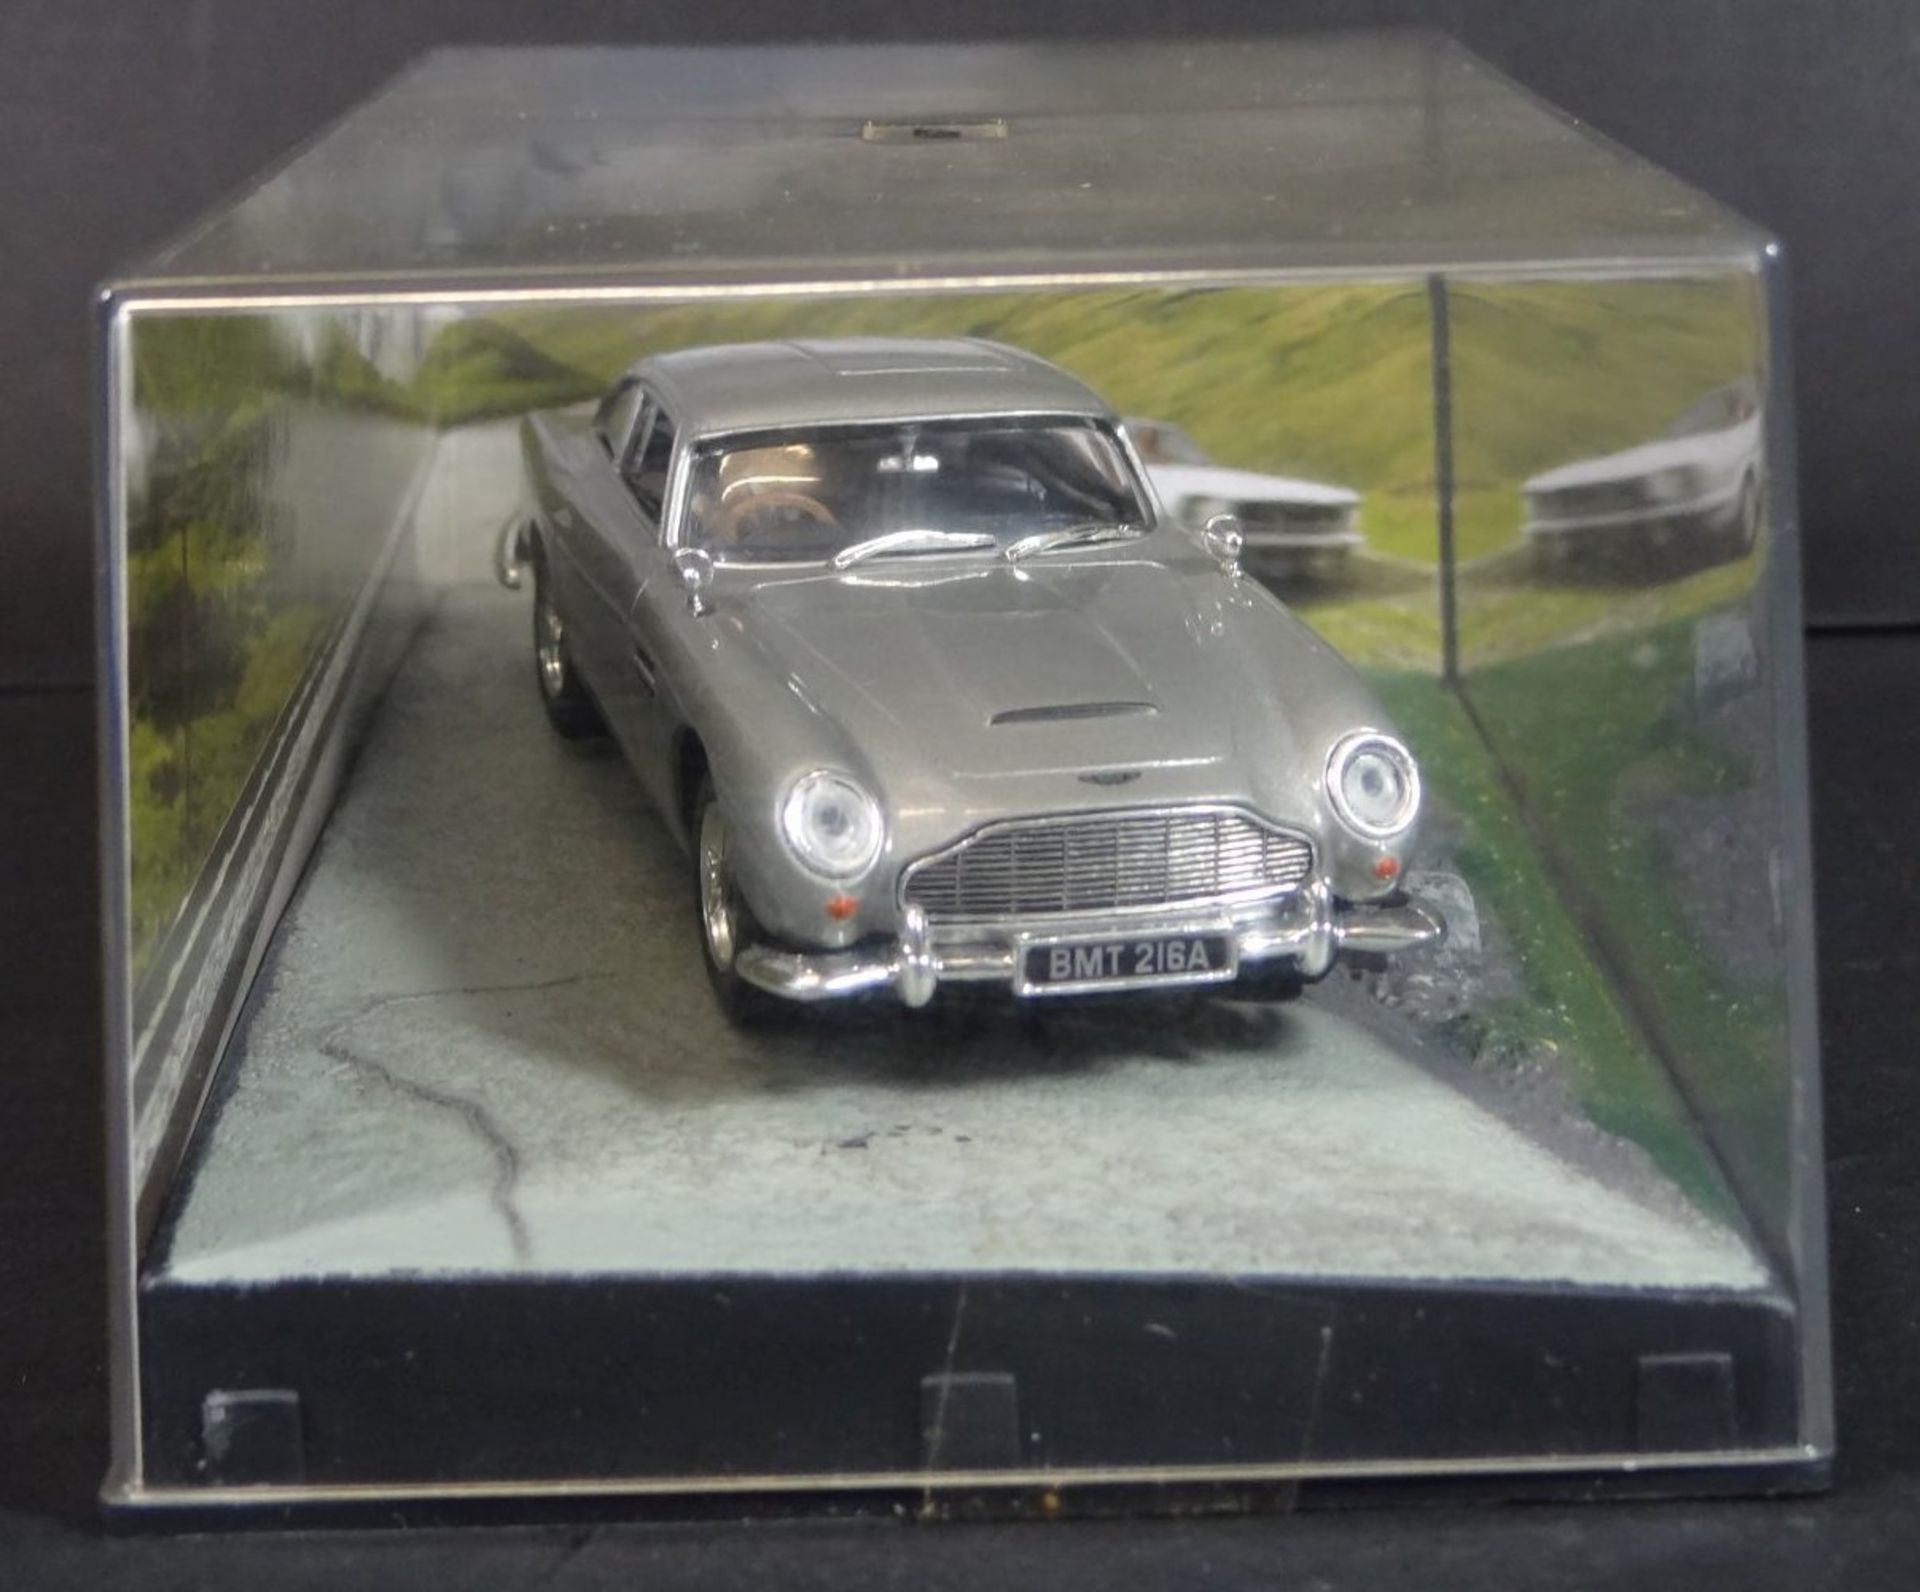 Goldfinger Modellauto "Aston Martin" Neuwertig in Display - Bild 4 aus 5